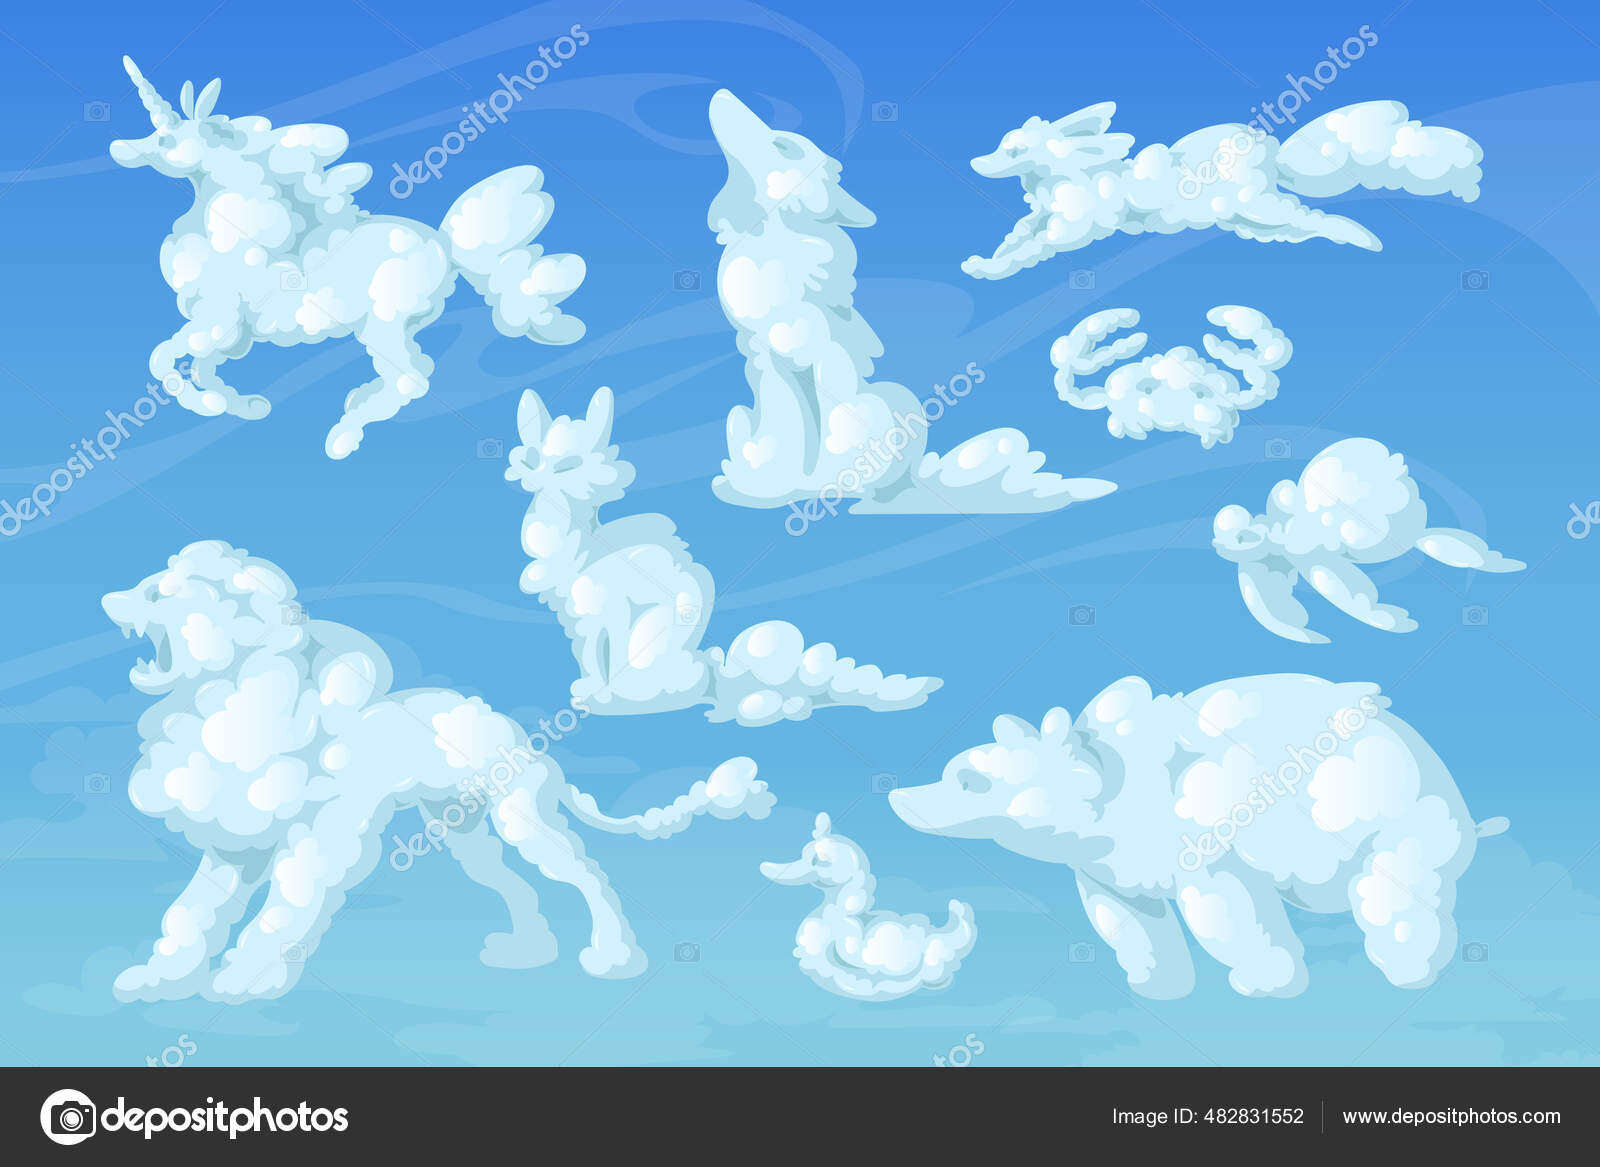 Desenho de unicórnio fofo voando no céu animal kawaii